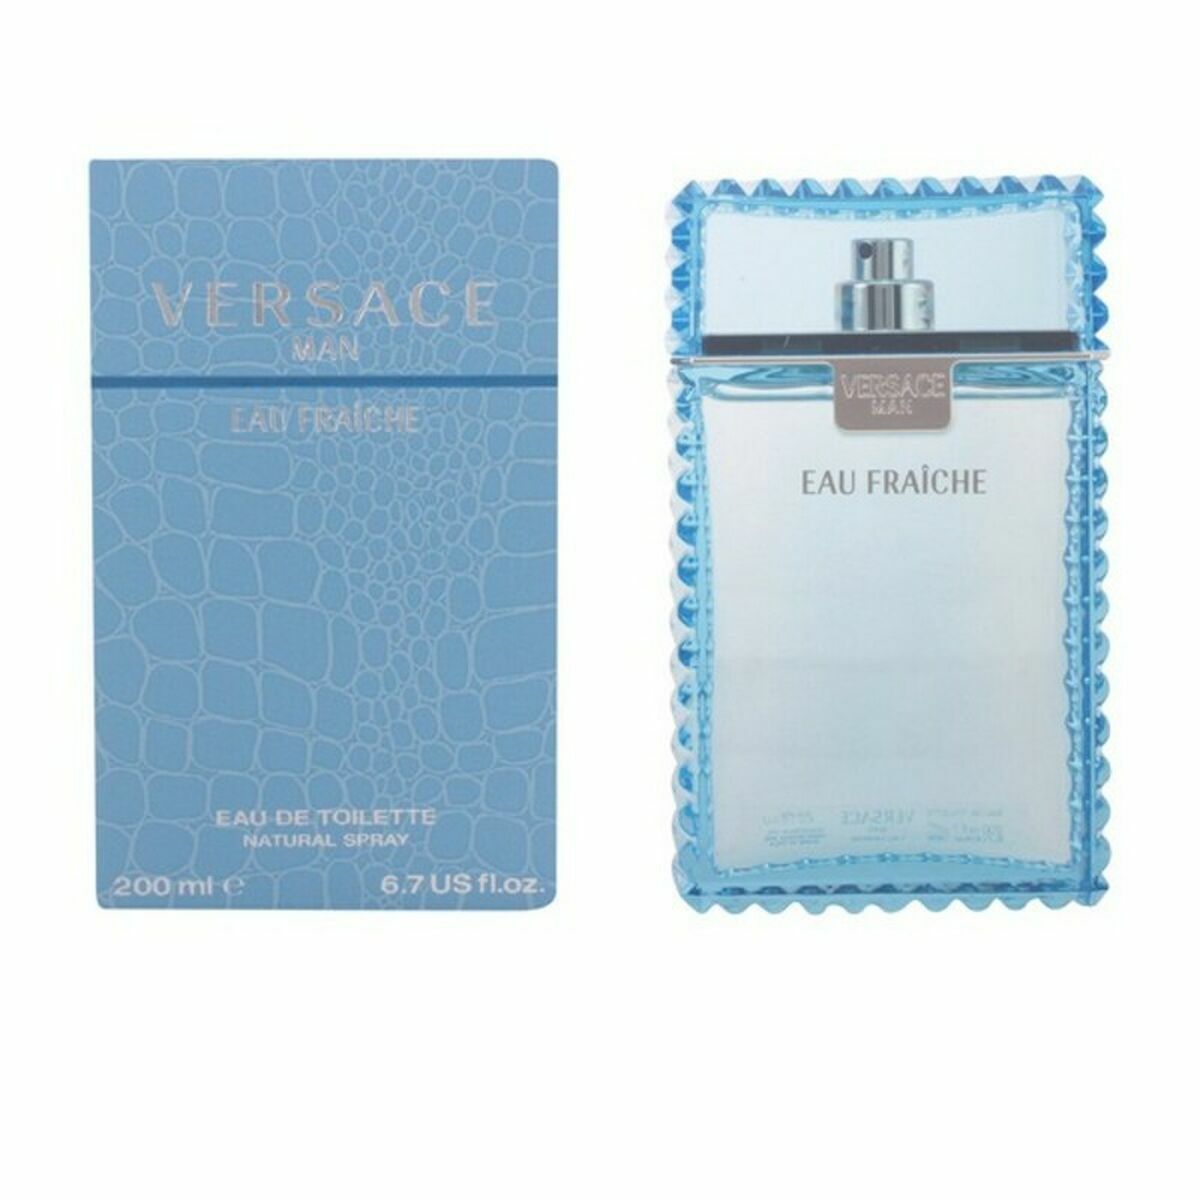 Men's Perfume Versace EDT Man Eau Fraiche (200 ml)-0